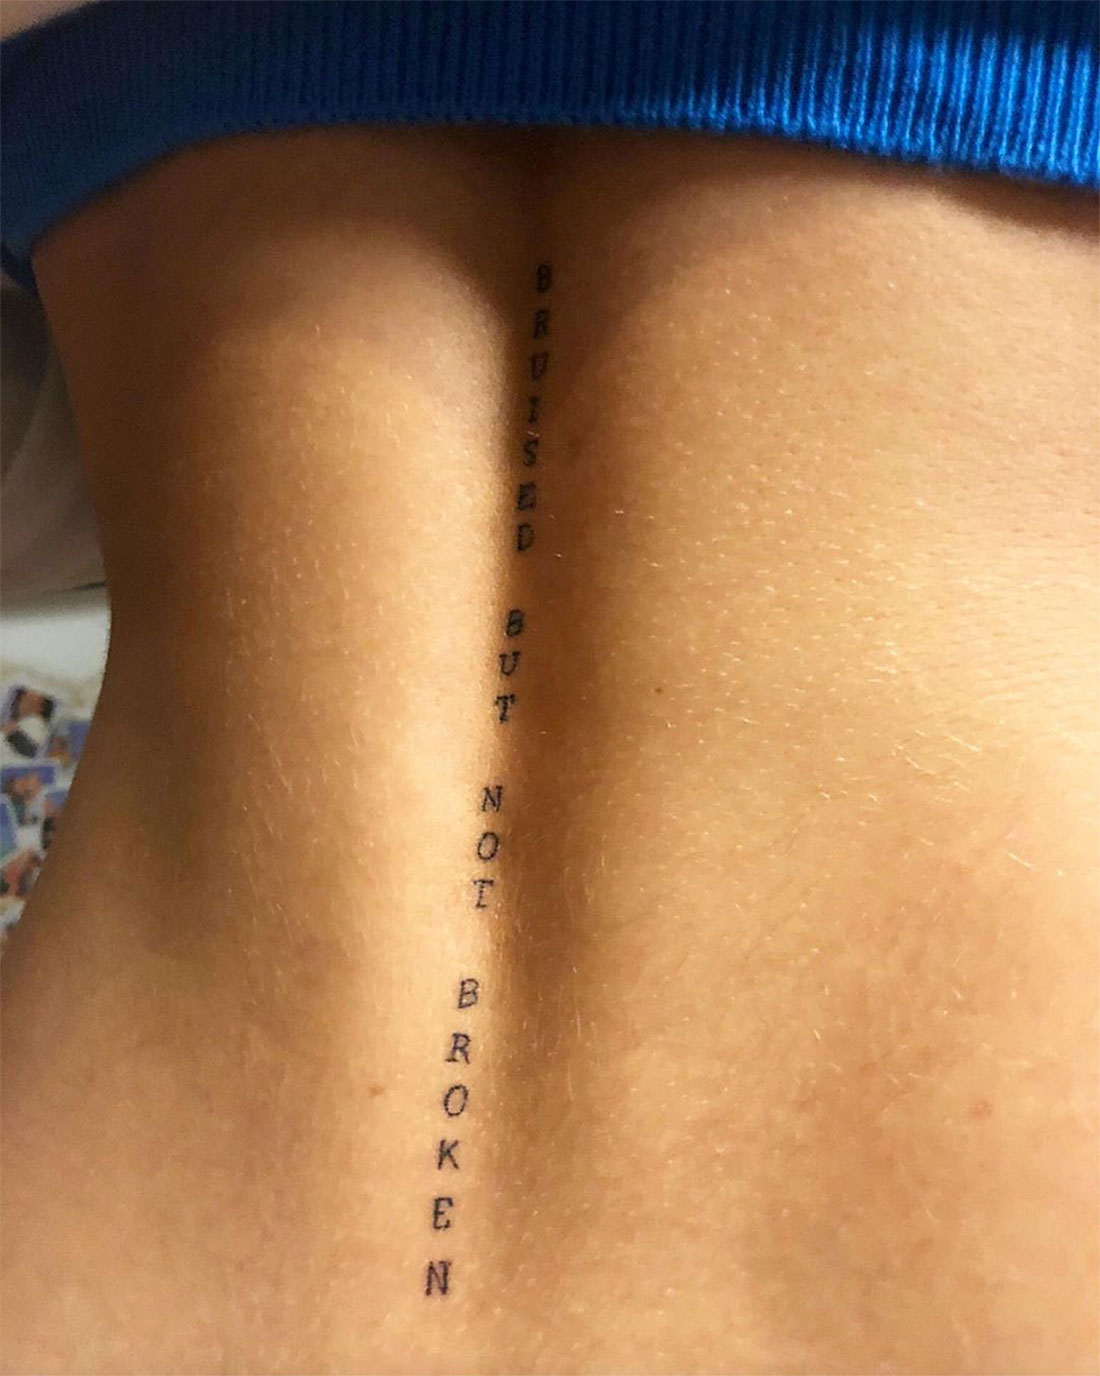 Bella Thorne New Tattoo Spine Instagram July 14, 2019